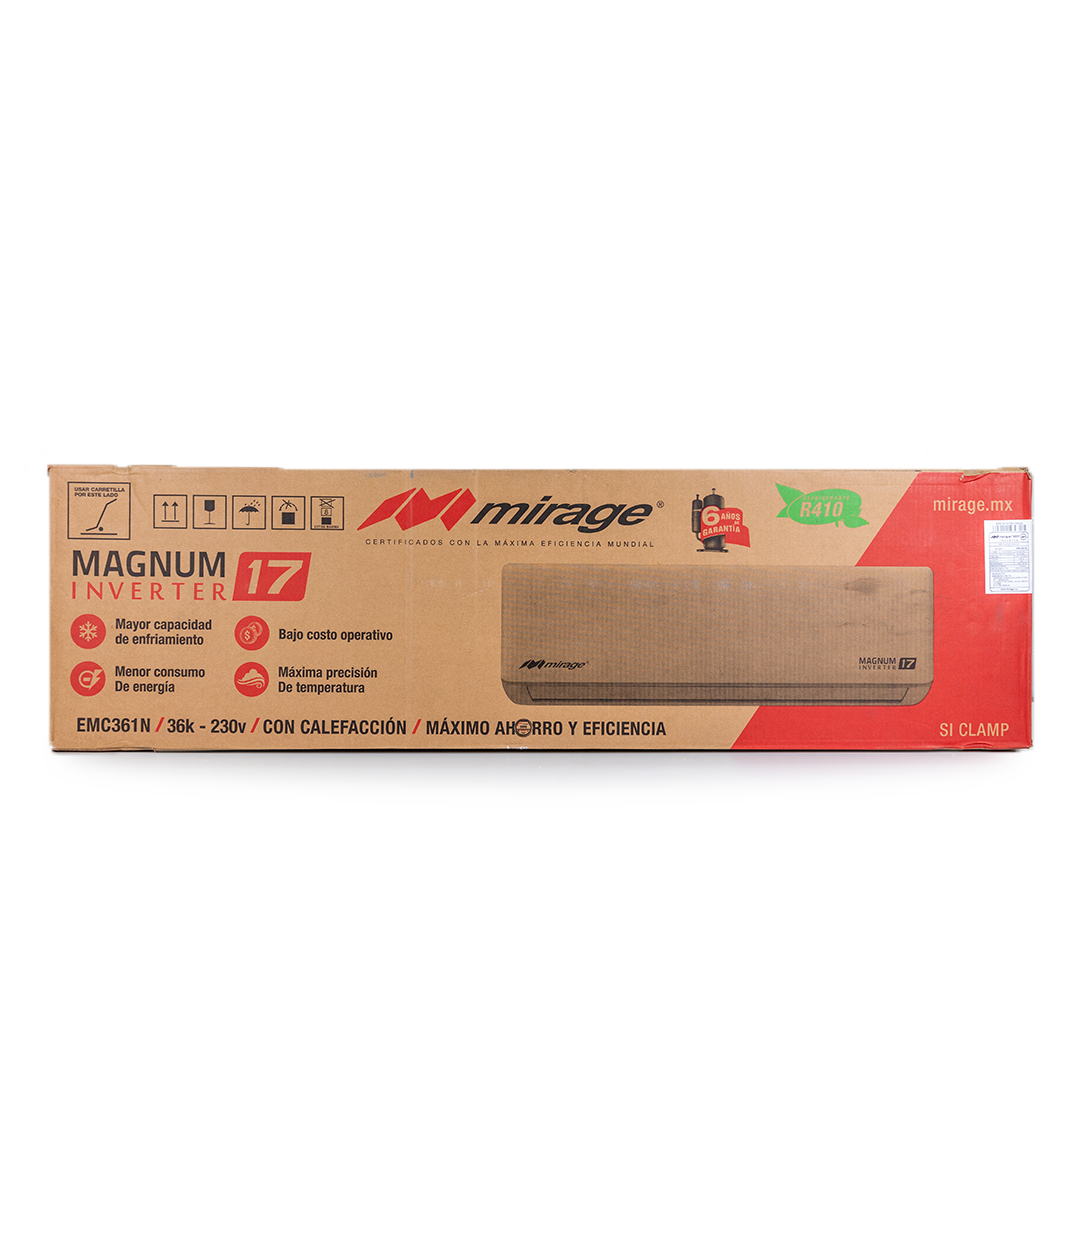 Magnum 17 Frío/Calor Inverter CMC361P 220v 3 Toneladas